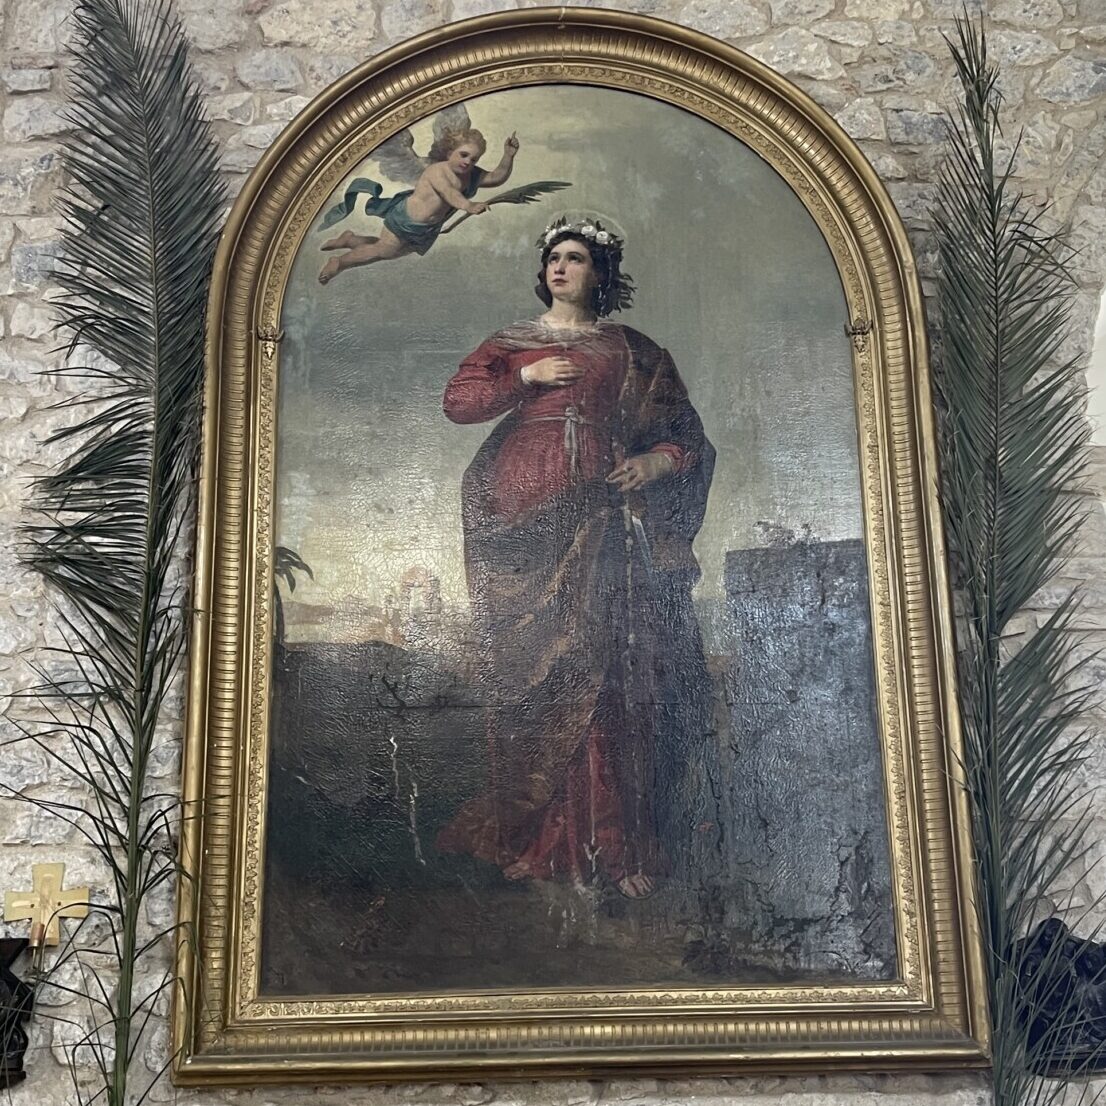 Kur perandoresha Sisi solli në Durrës pikturën e shën Luçias